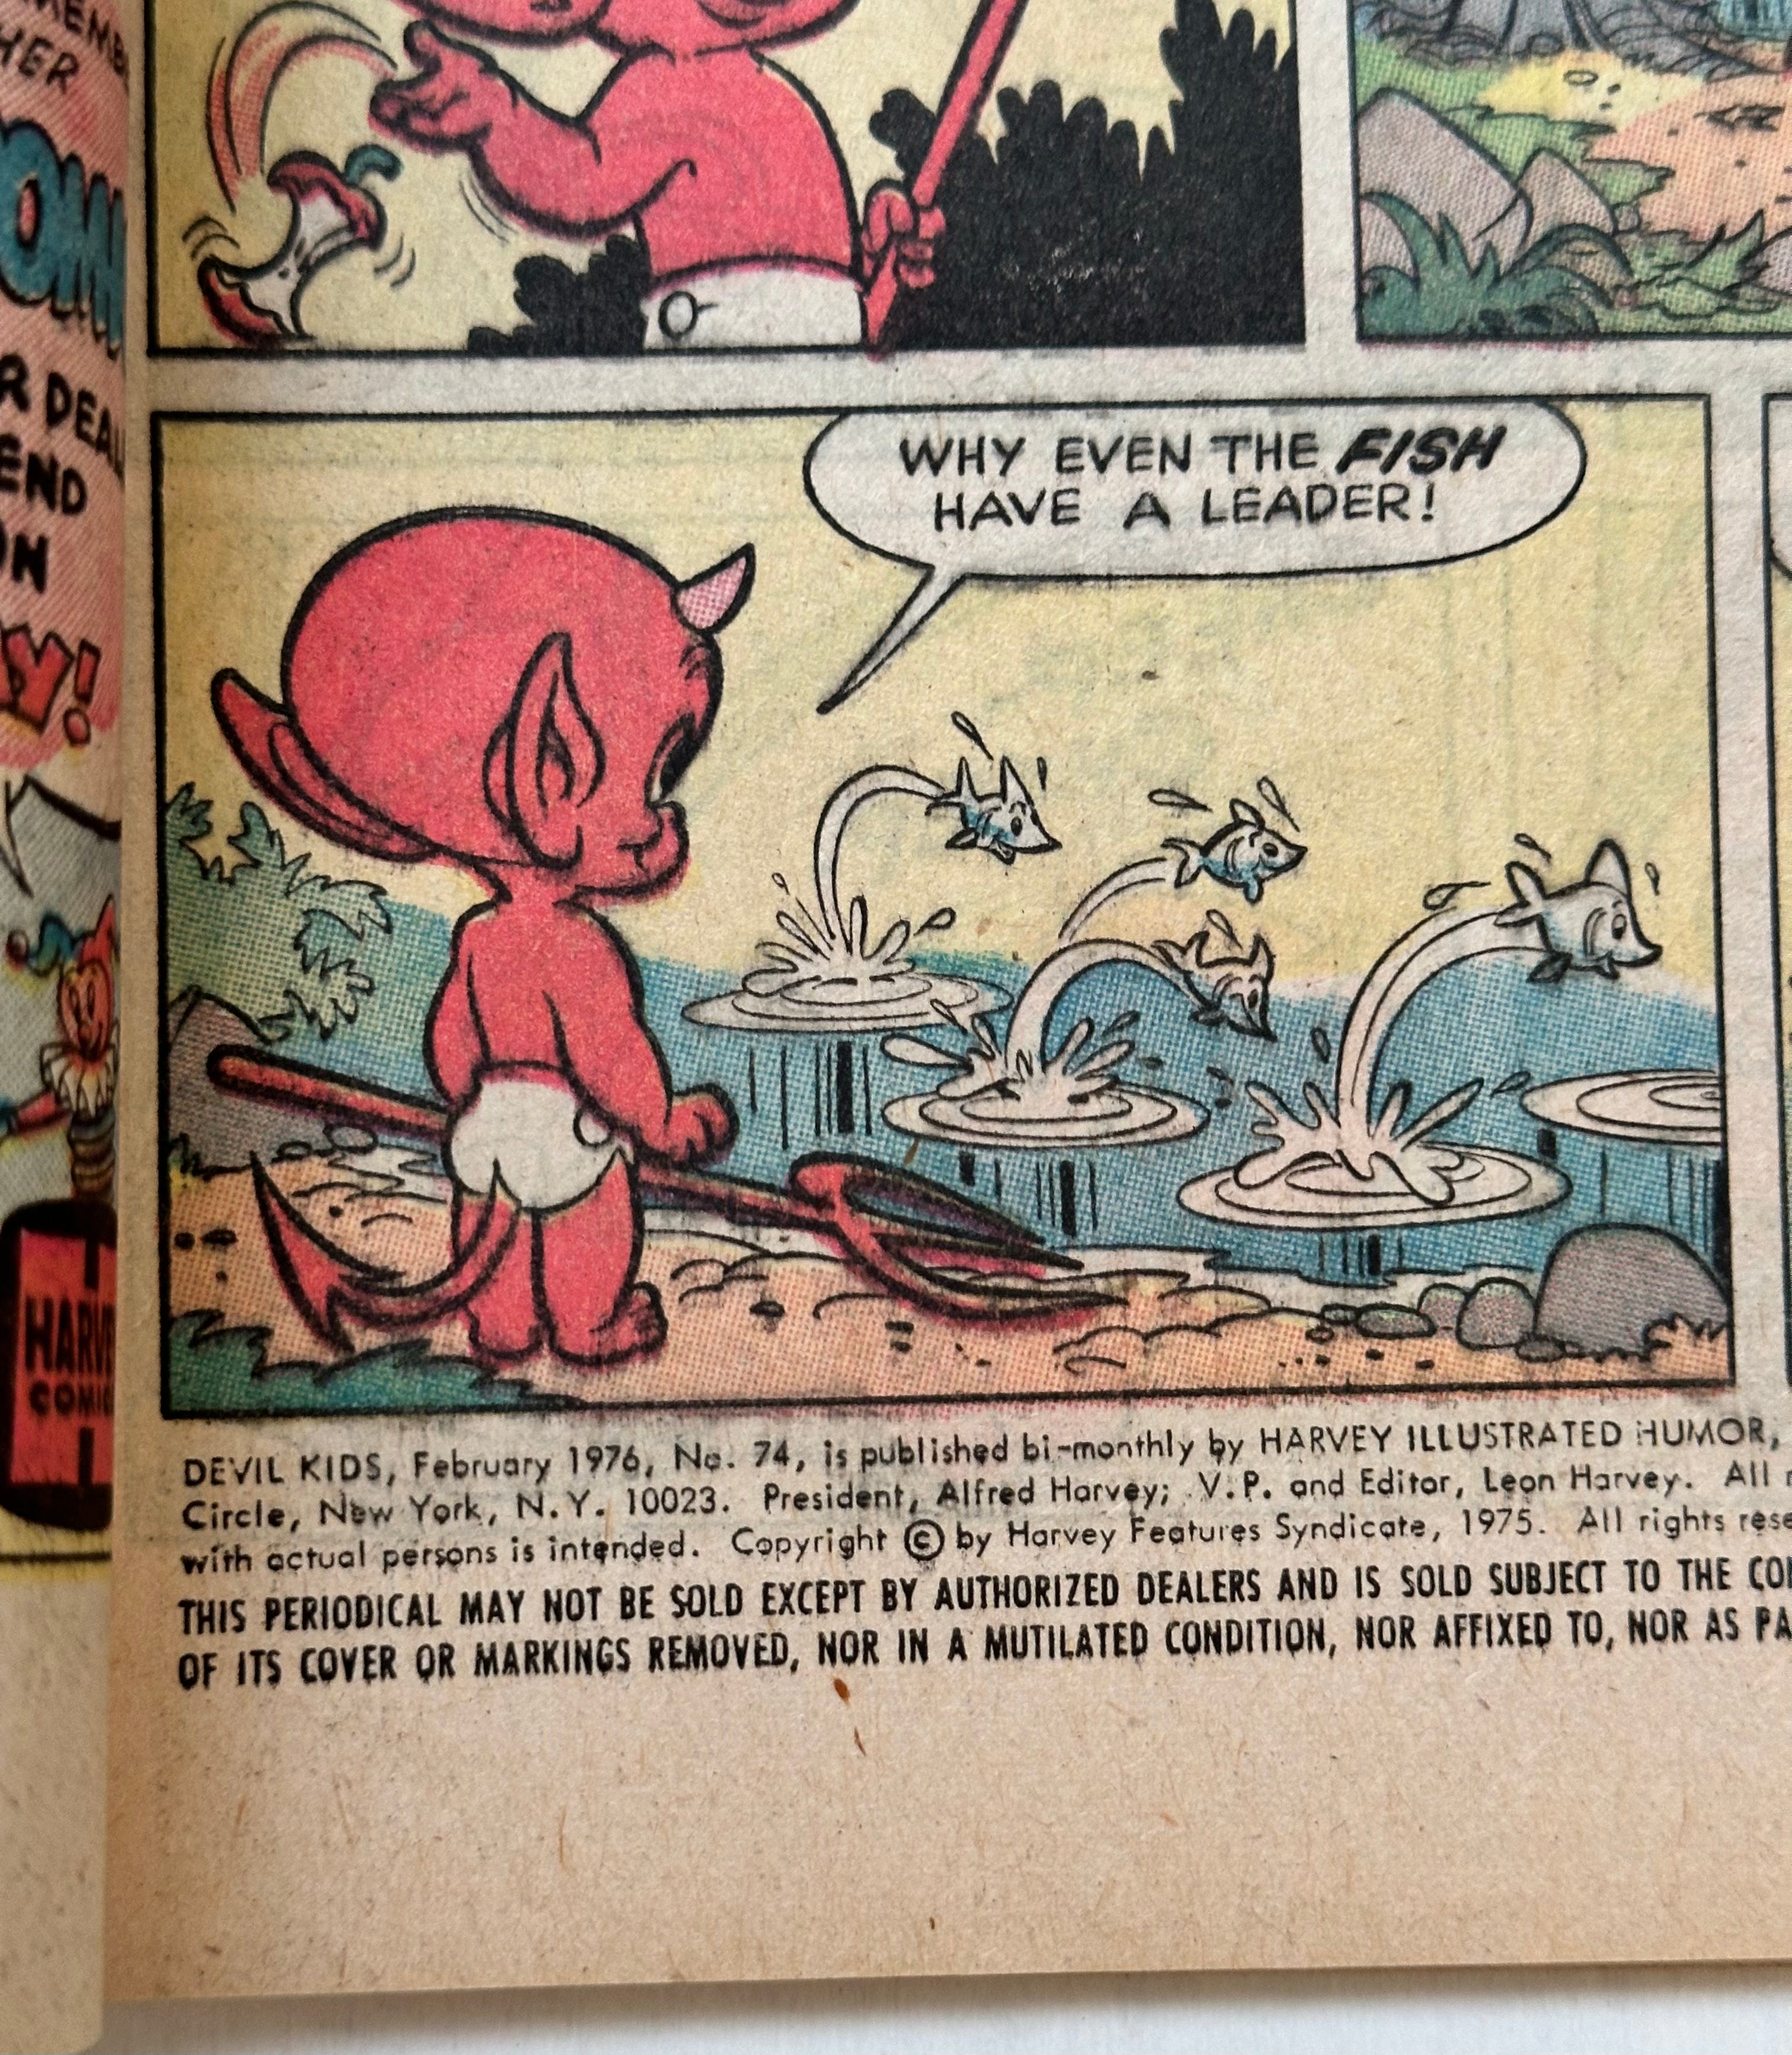 Devil kids, hot stuff comic book #74 from 1975